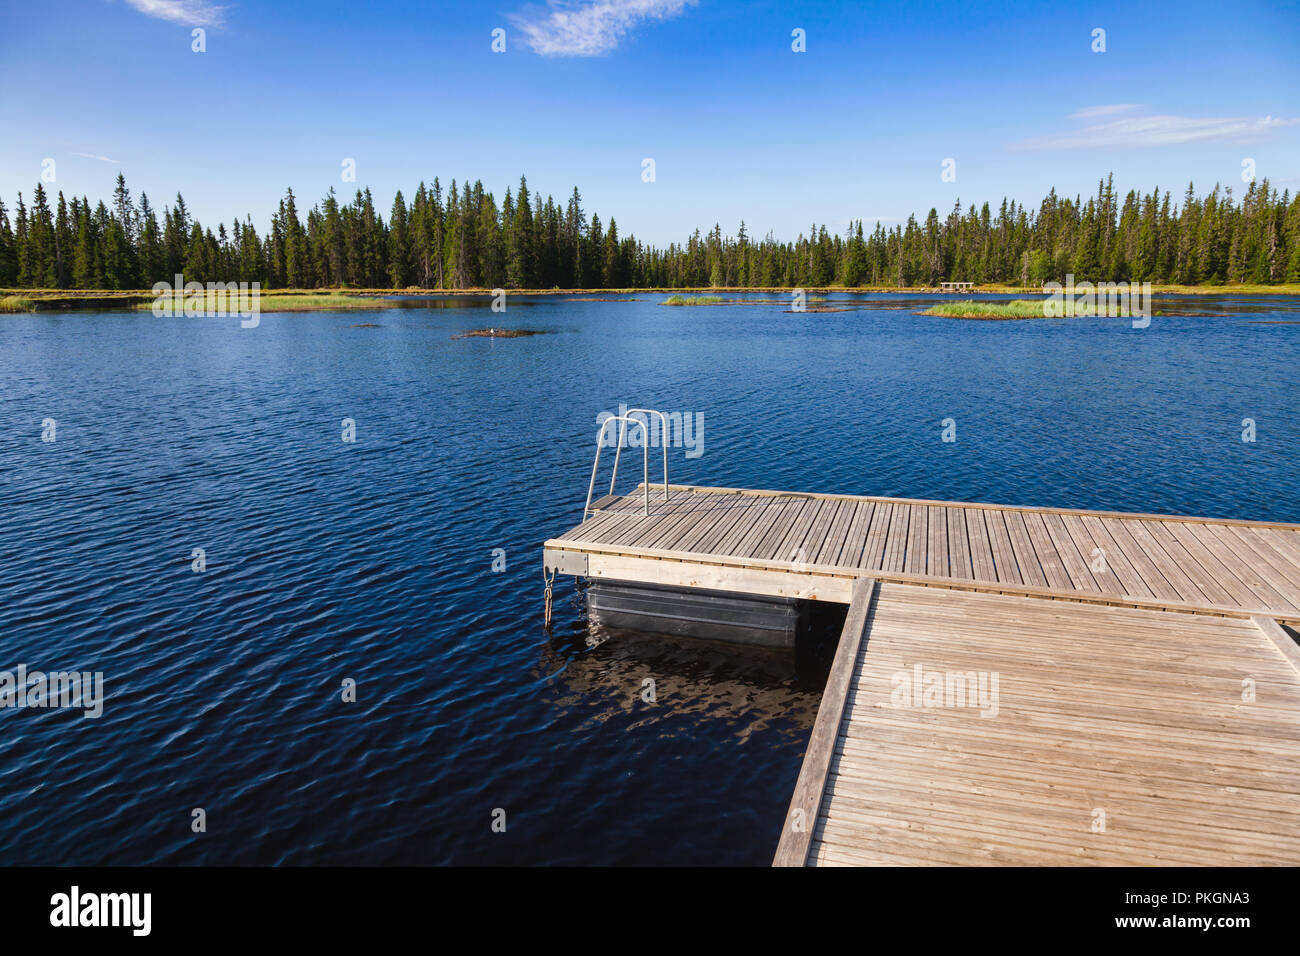 Piscina flotante balsa dock en un lago del bosque en el centro de Noruega Foto de stock